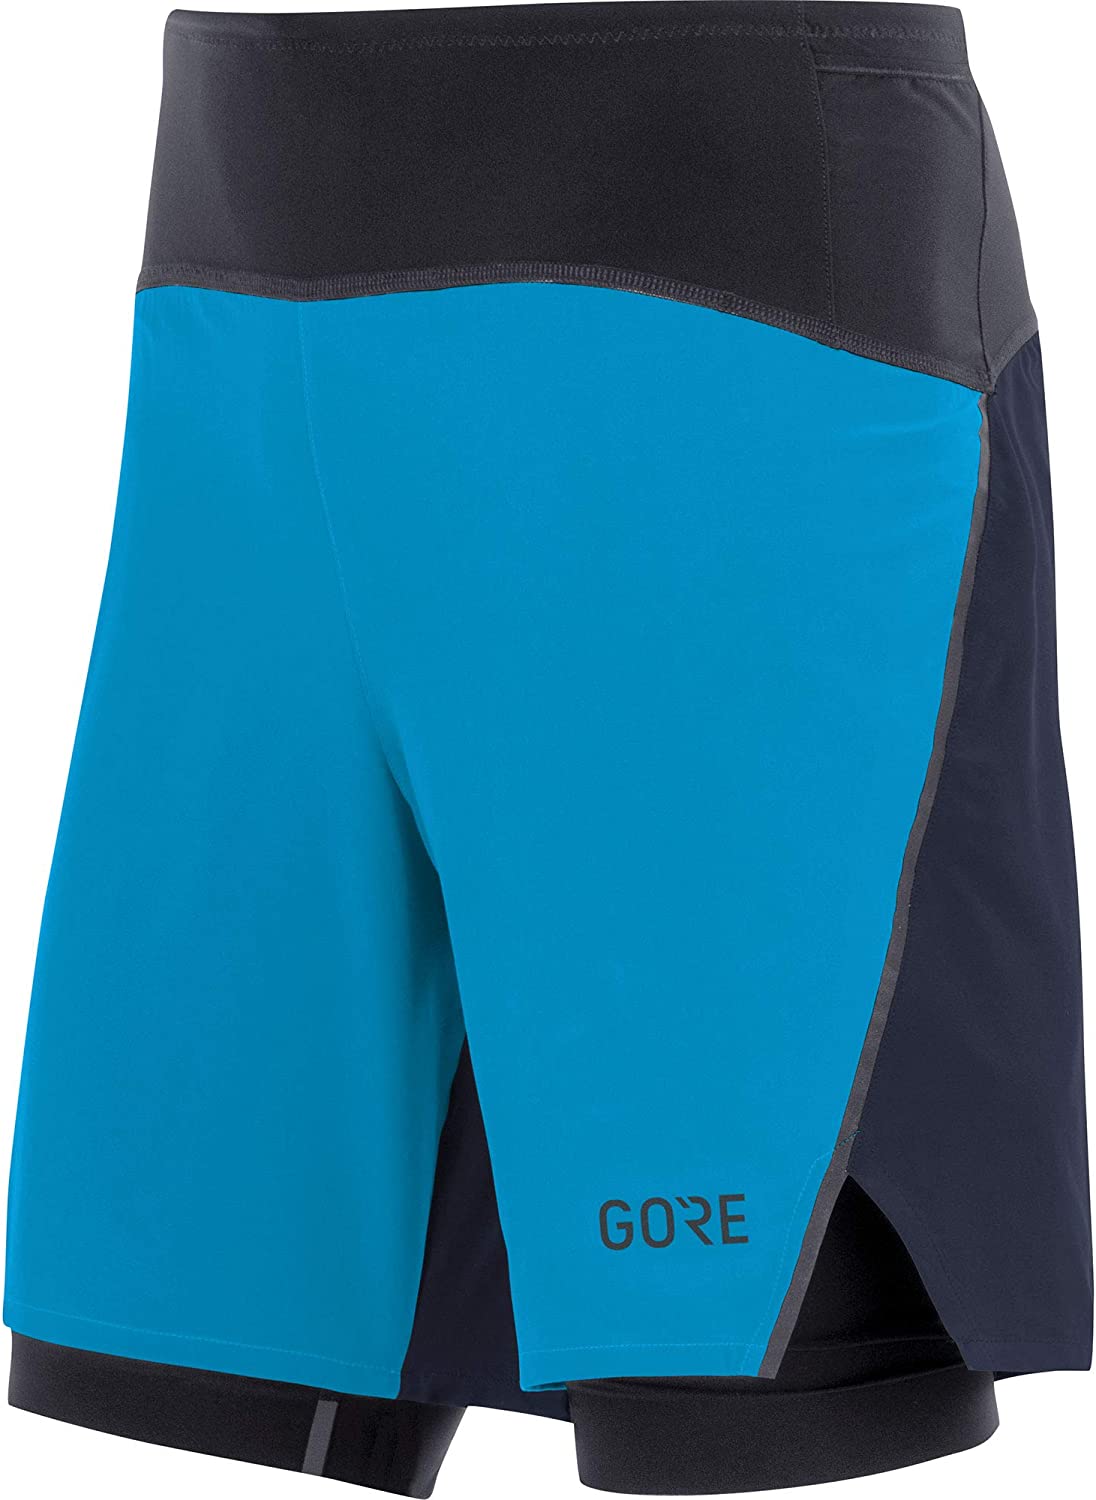 Gore Wear - R7 2In1 Shorts - Pantaloncini running - Uomo